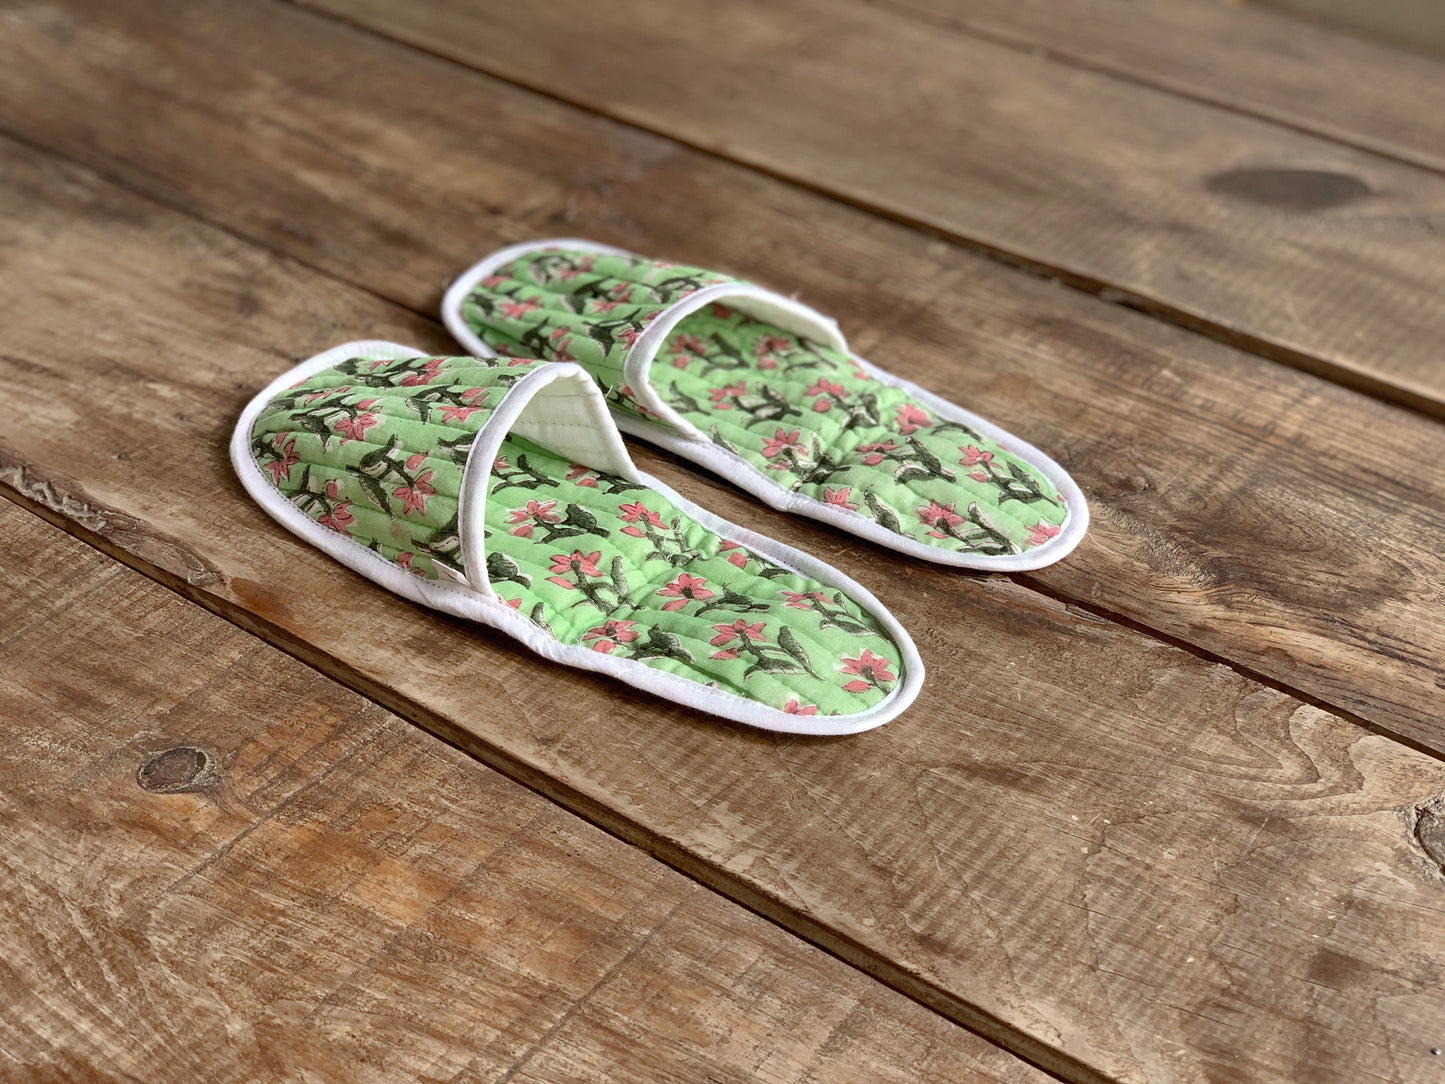 Zapatillas de viaje enguatadas con bolsa a juego · Algodón puro estampado block print en India · Zapatillas de baño ducha · Verde flor rosa